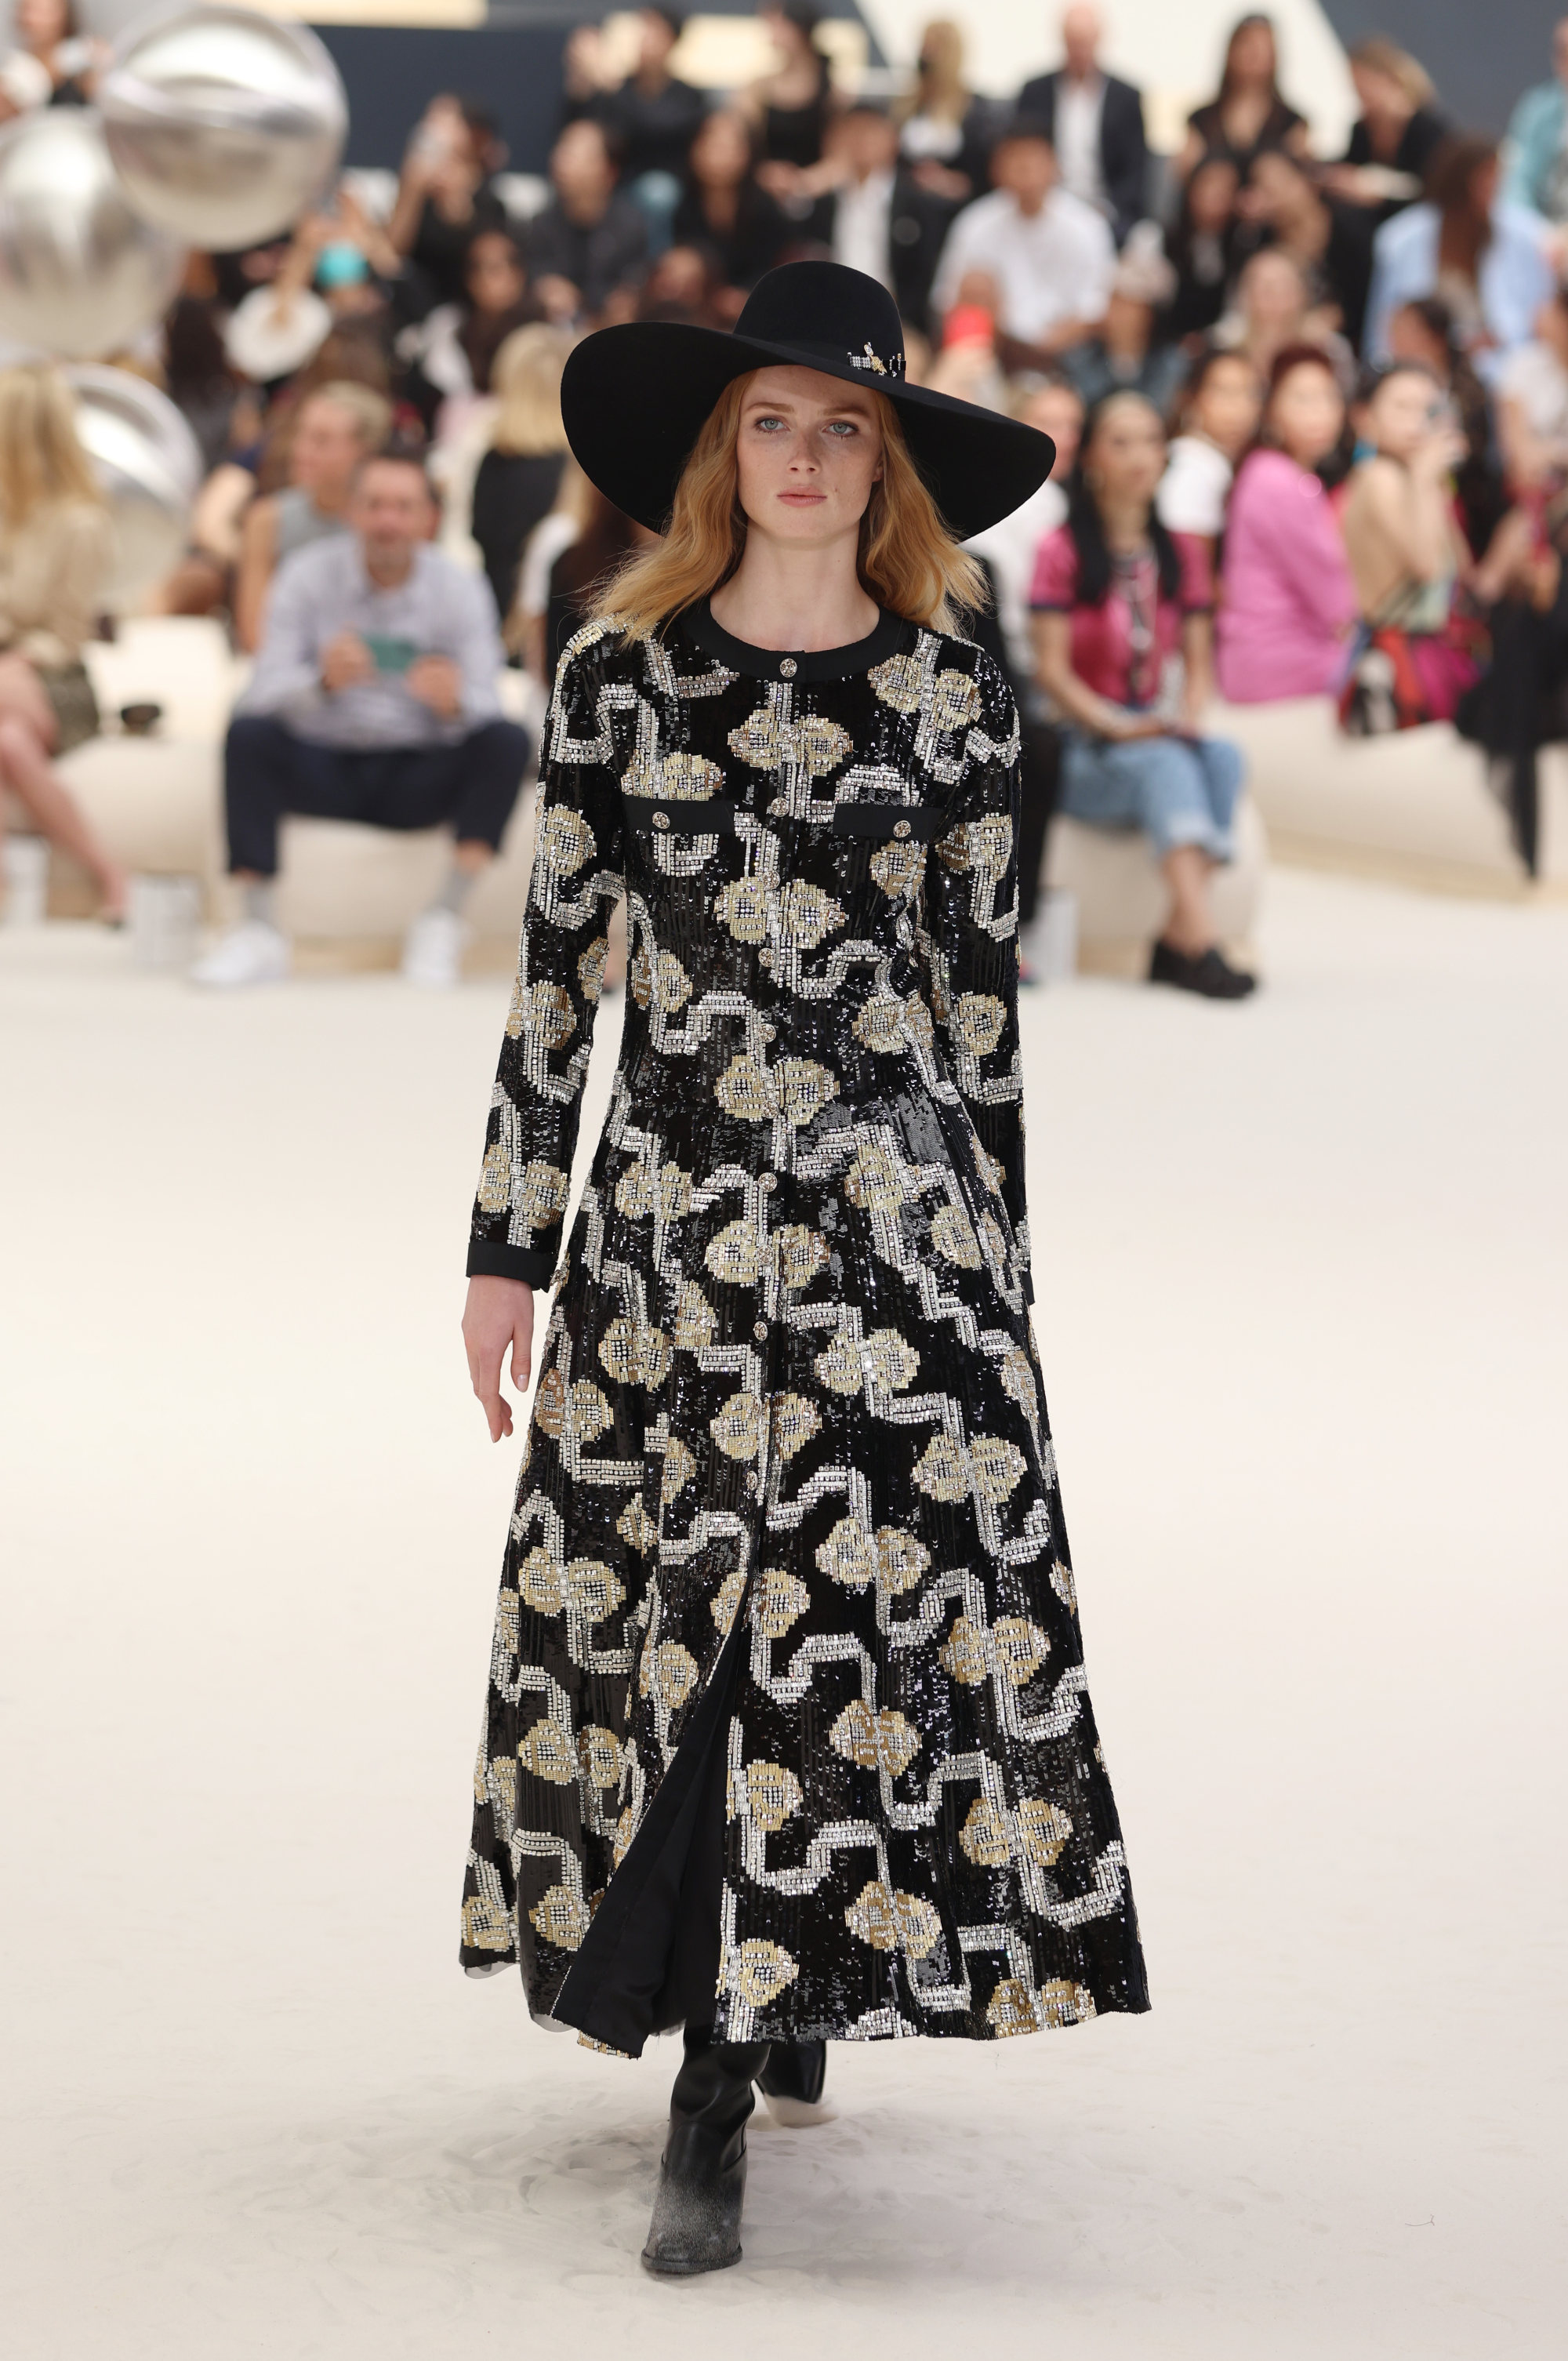 Paris Haute Couture Week: Chanel's autumn/winter 2022-23